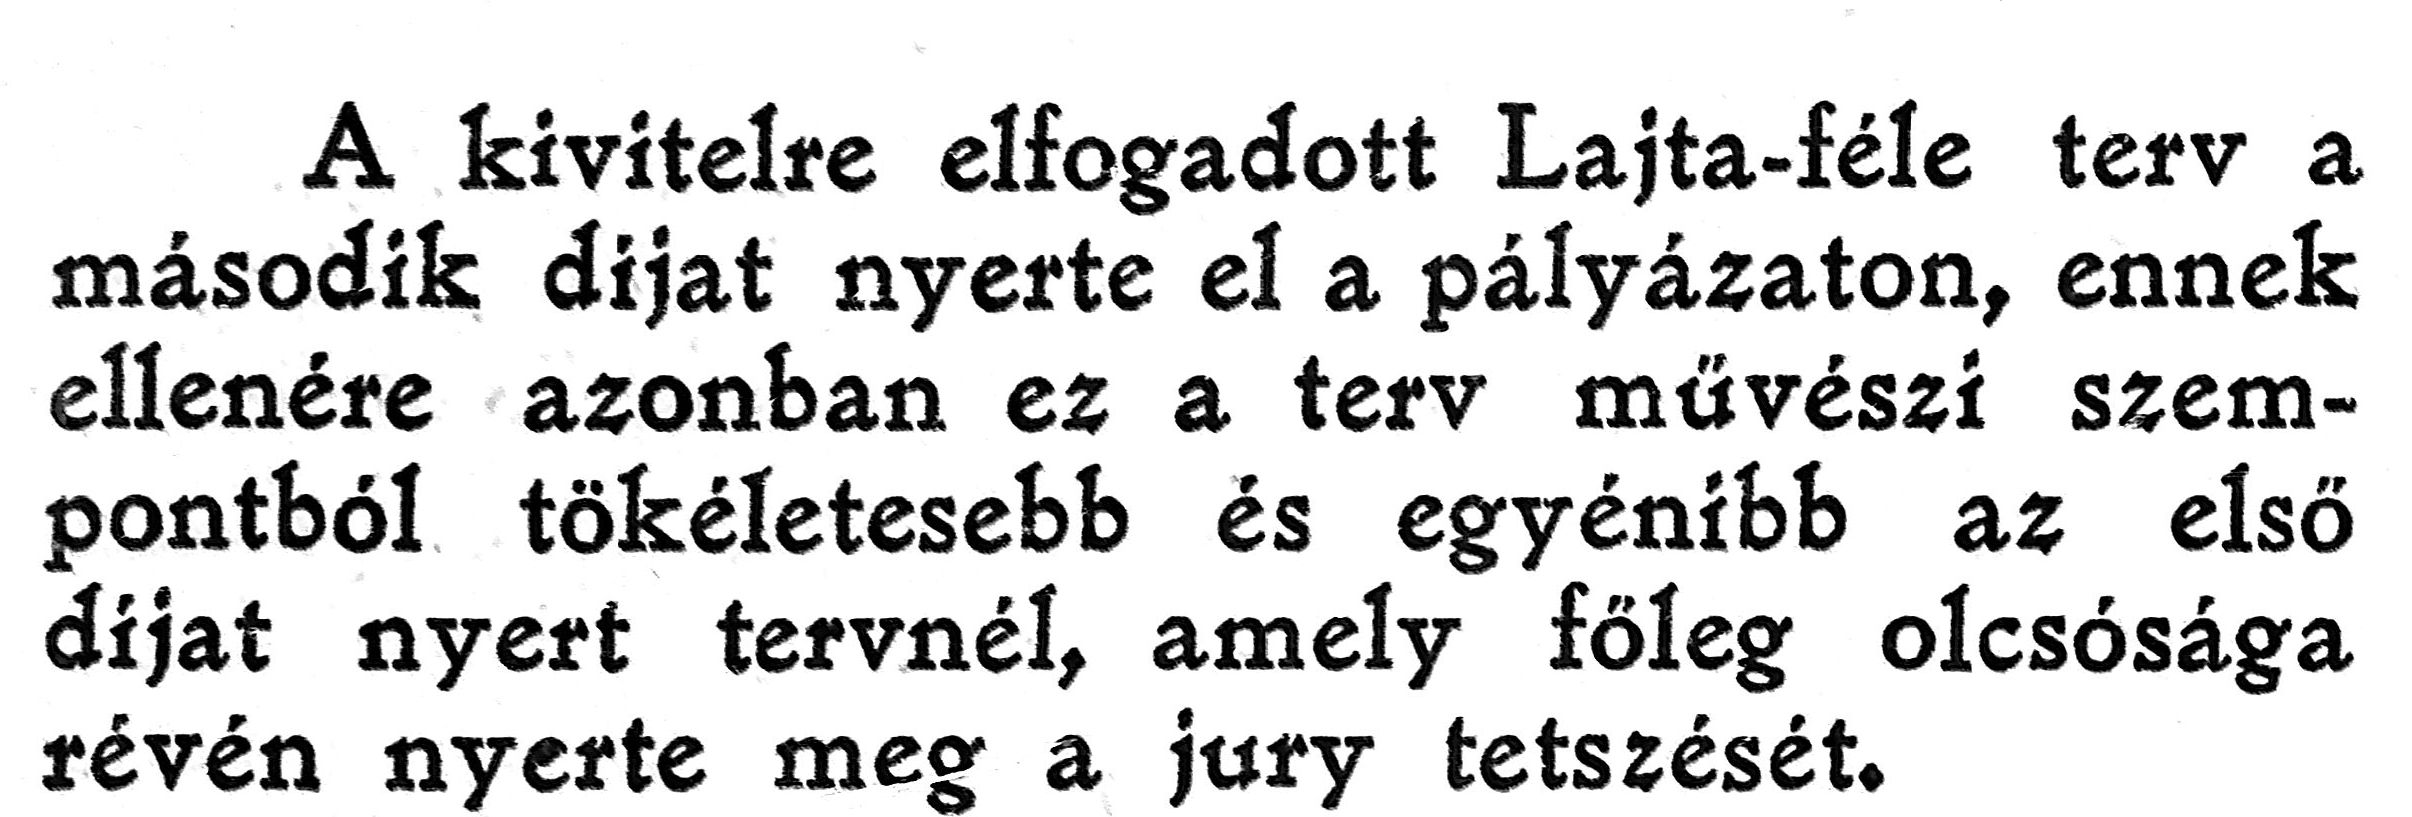 1911_12_Építészet és Iparművészet, 8. sz. 8. p.